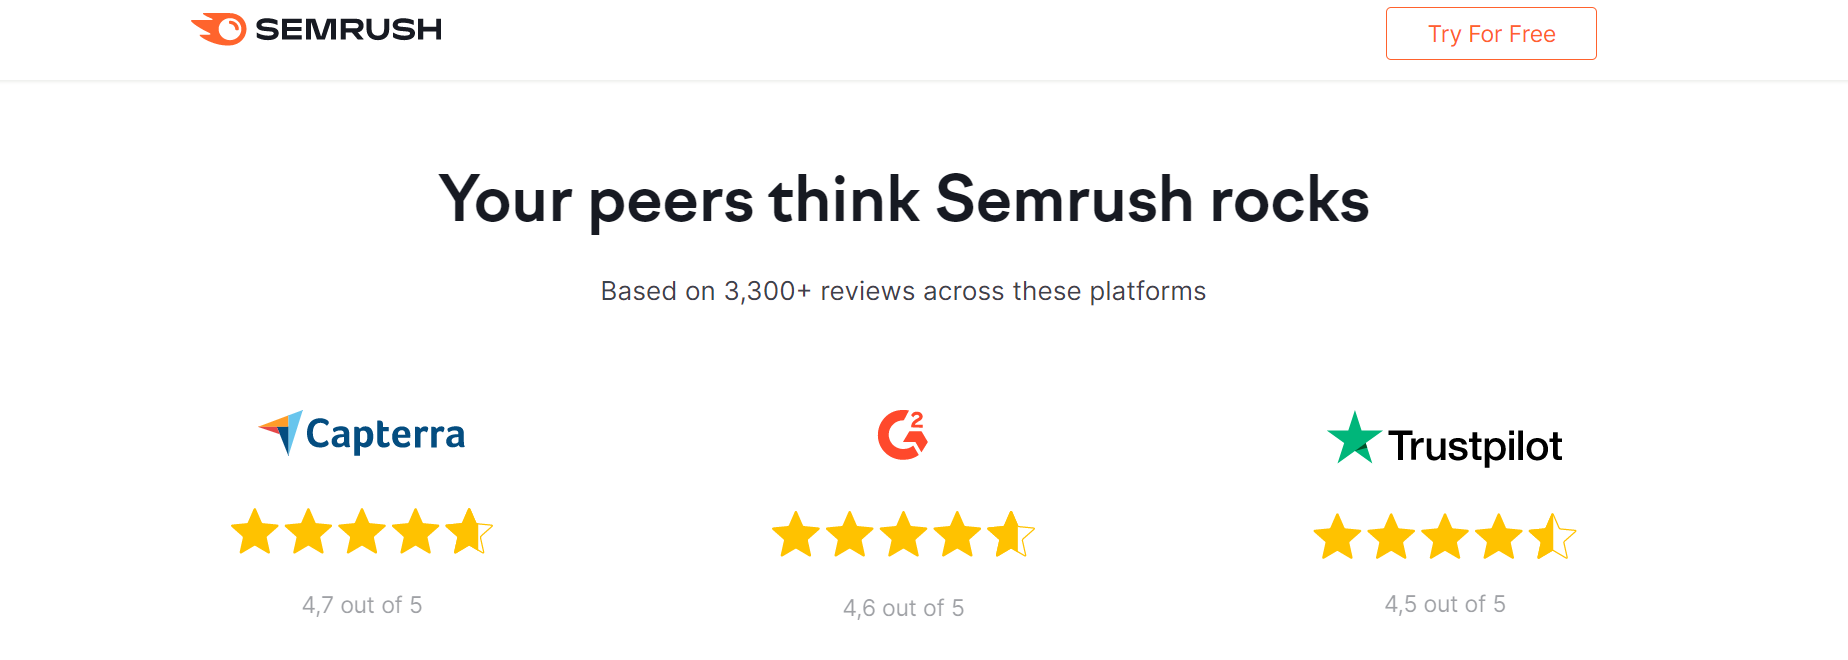 Semrush Reviews